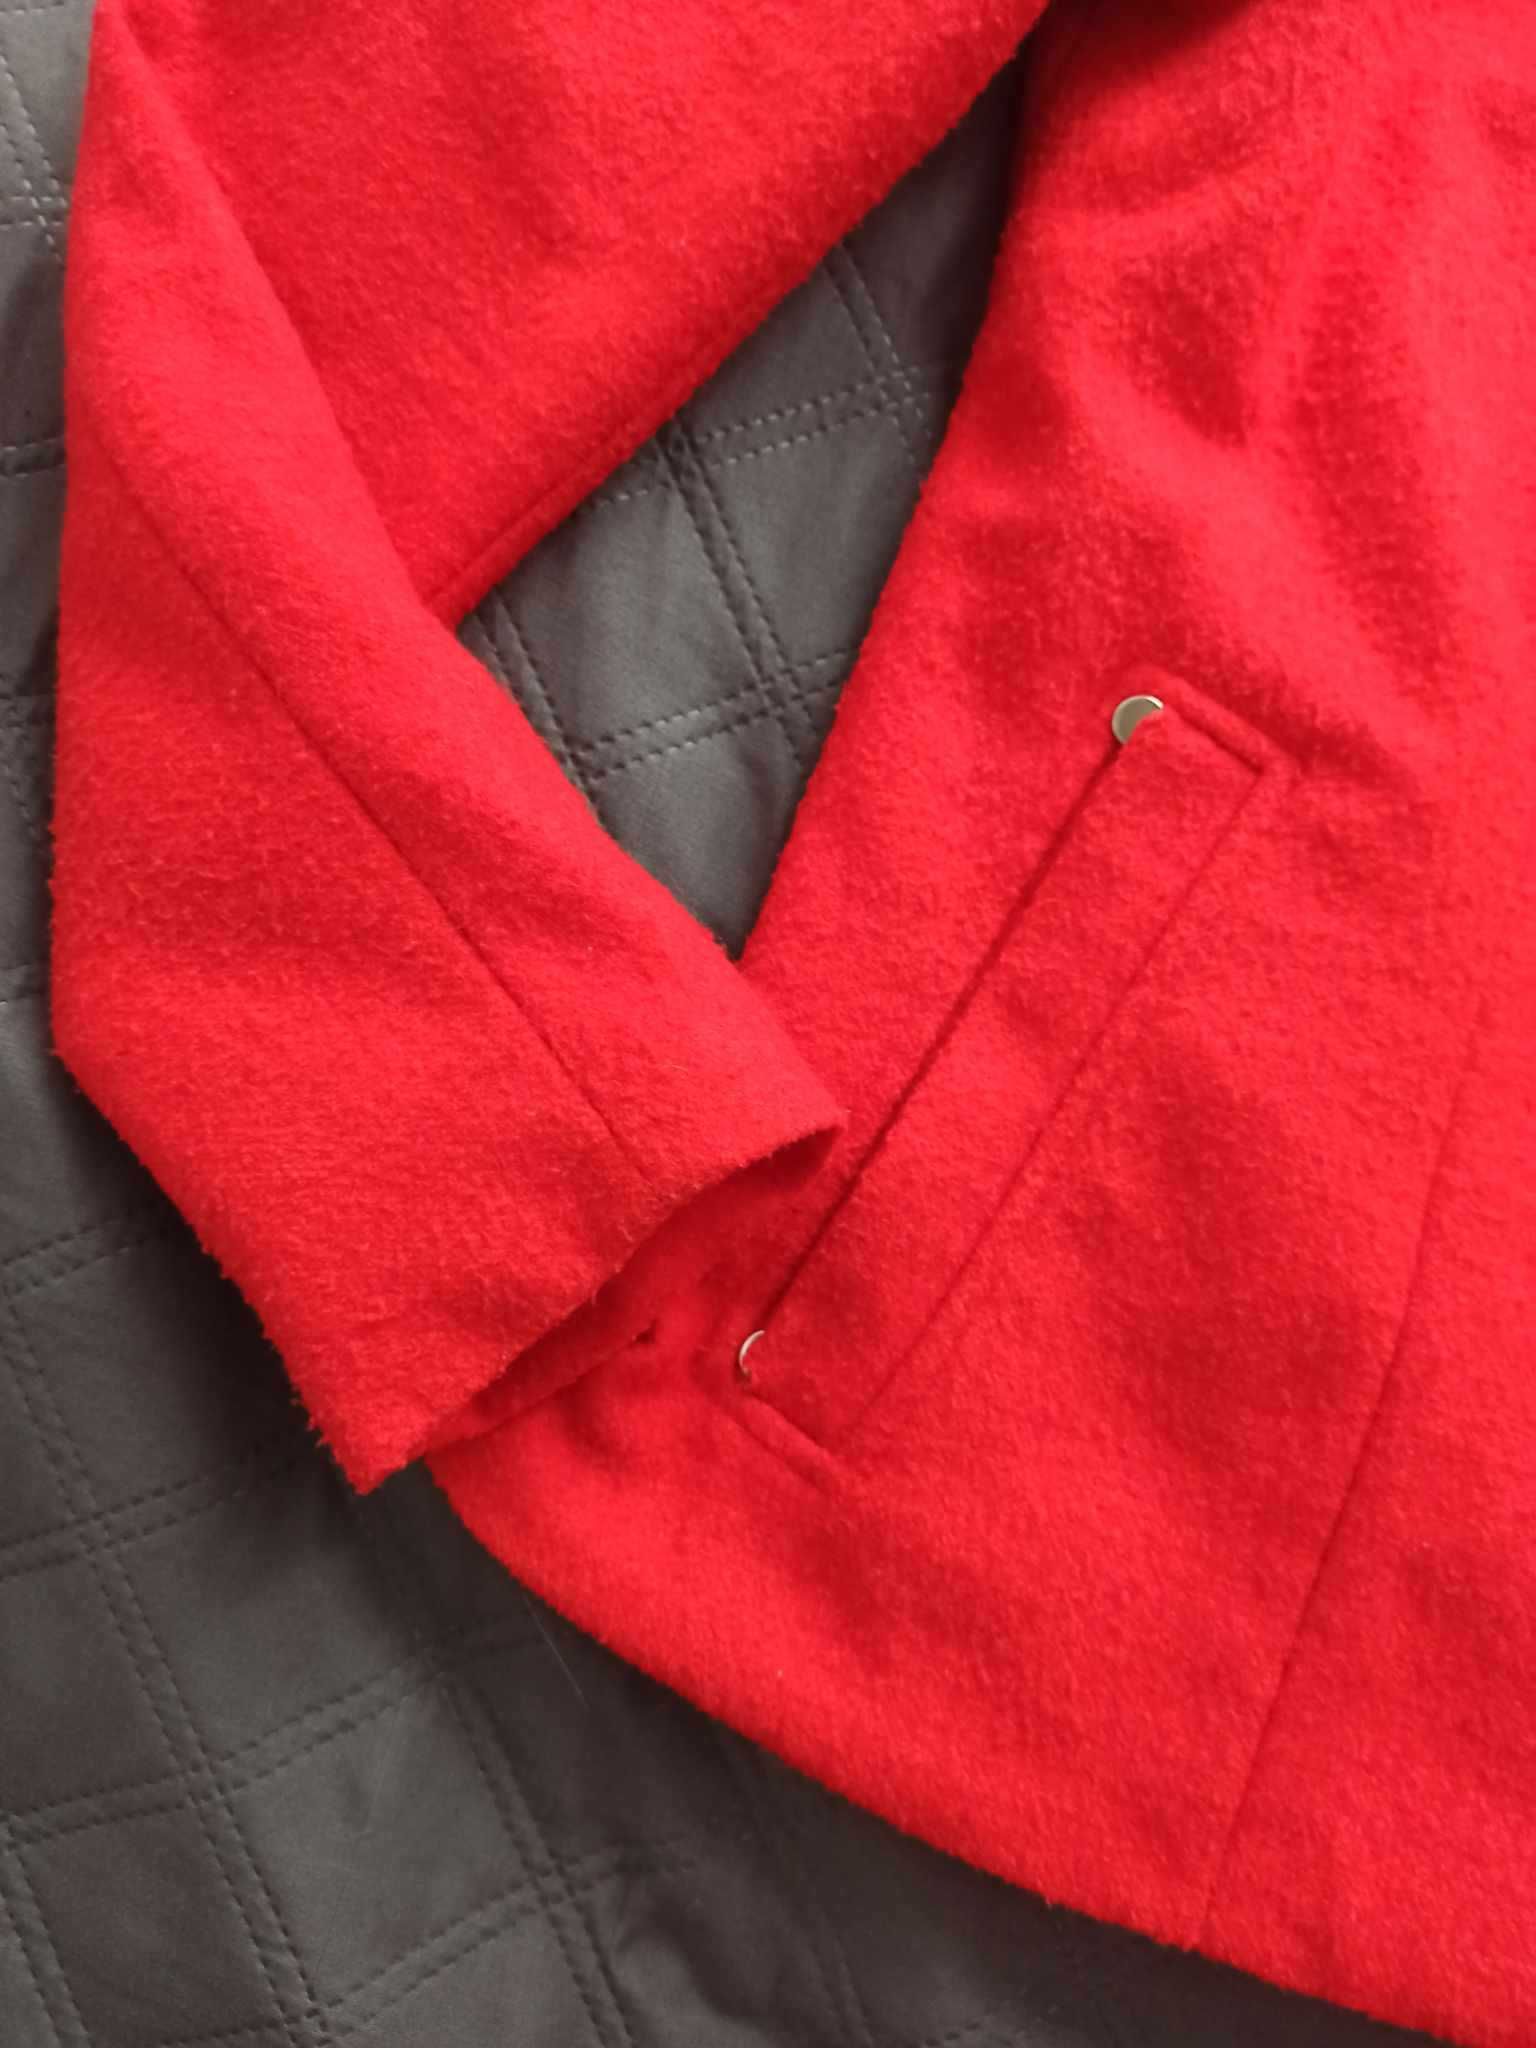 Czerwona damska wiosenna kurtka Mohito rozmiar S 23% wełna